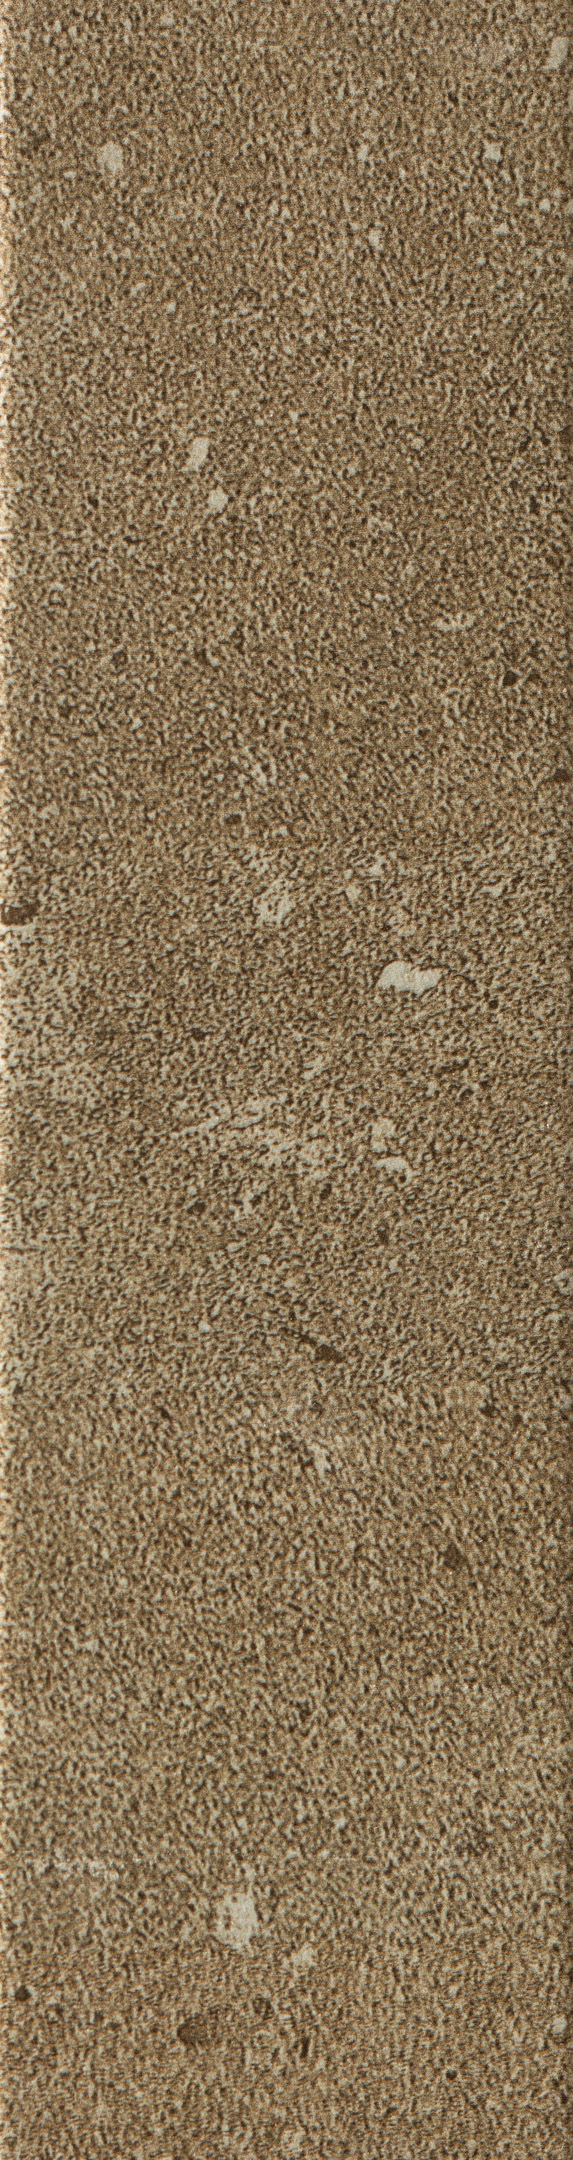 Клинкерная плитка Керамин Юта 3 бежевая 245х65х7 мм (34 шт.=0,54 кв.м) клинкерная плитка керамин мичиган 7 белая 245х65х7 мм 34 шт 0 54 кв м